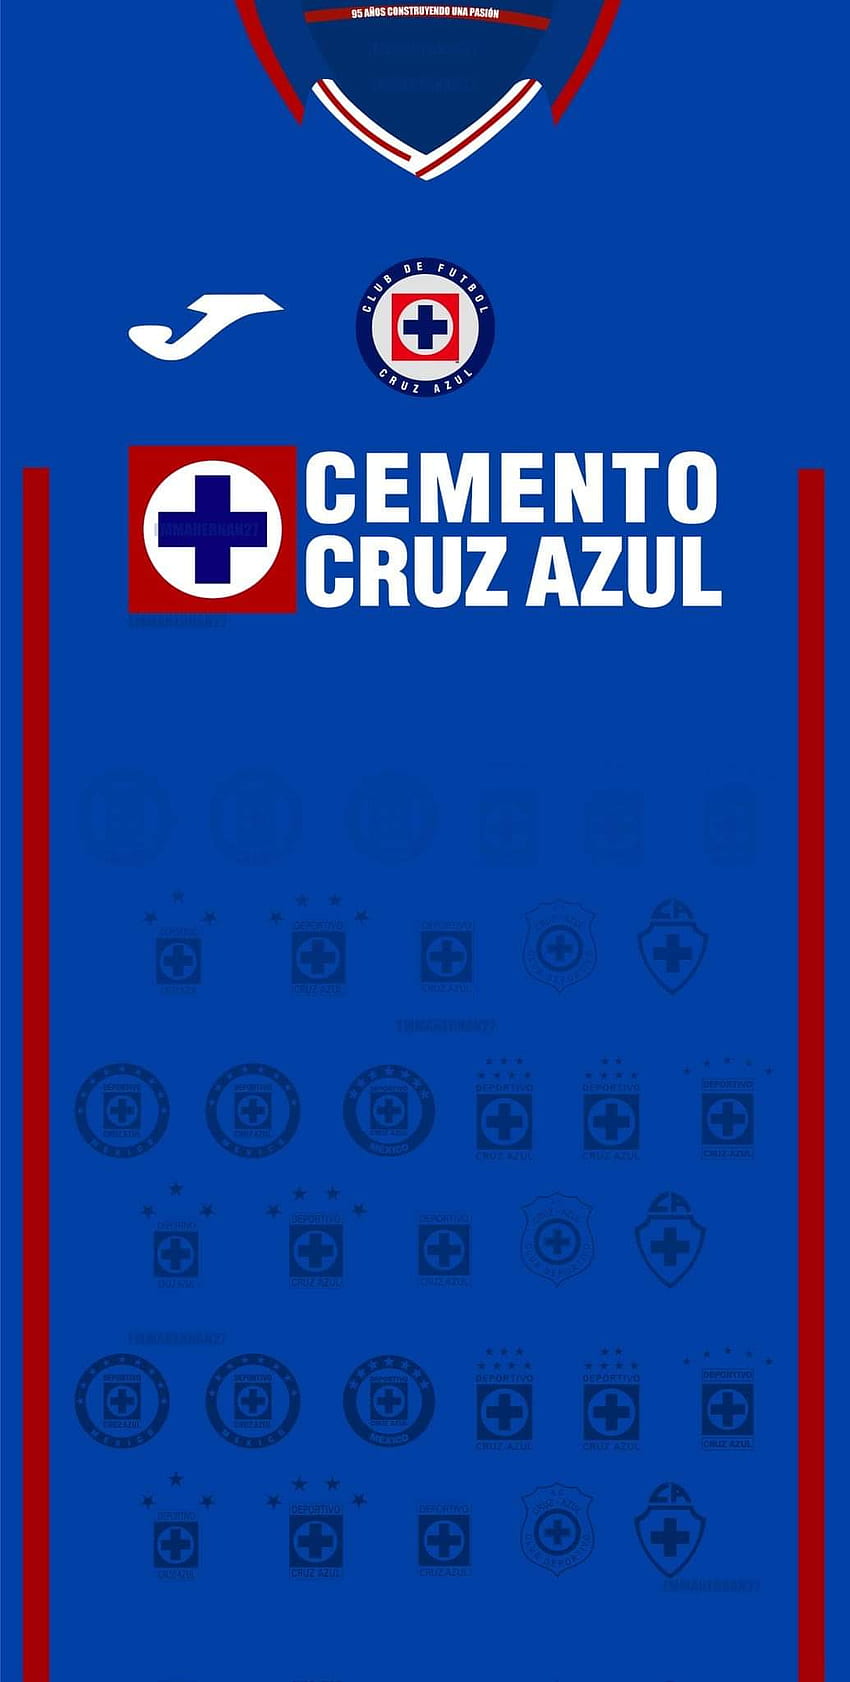 Cruz HD wallpapers | Pxfuel